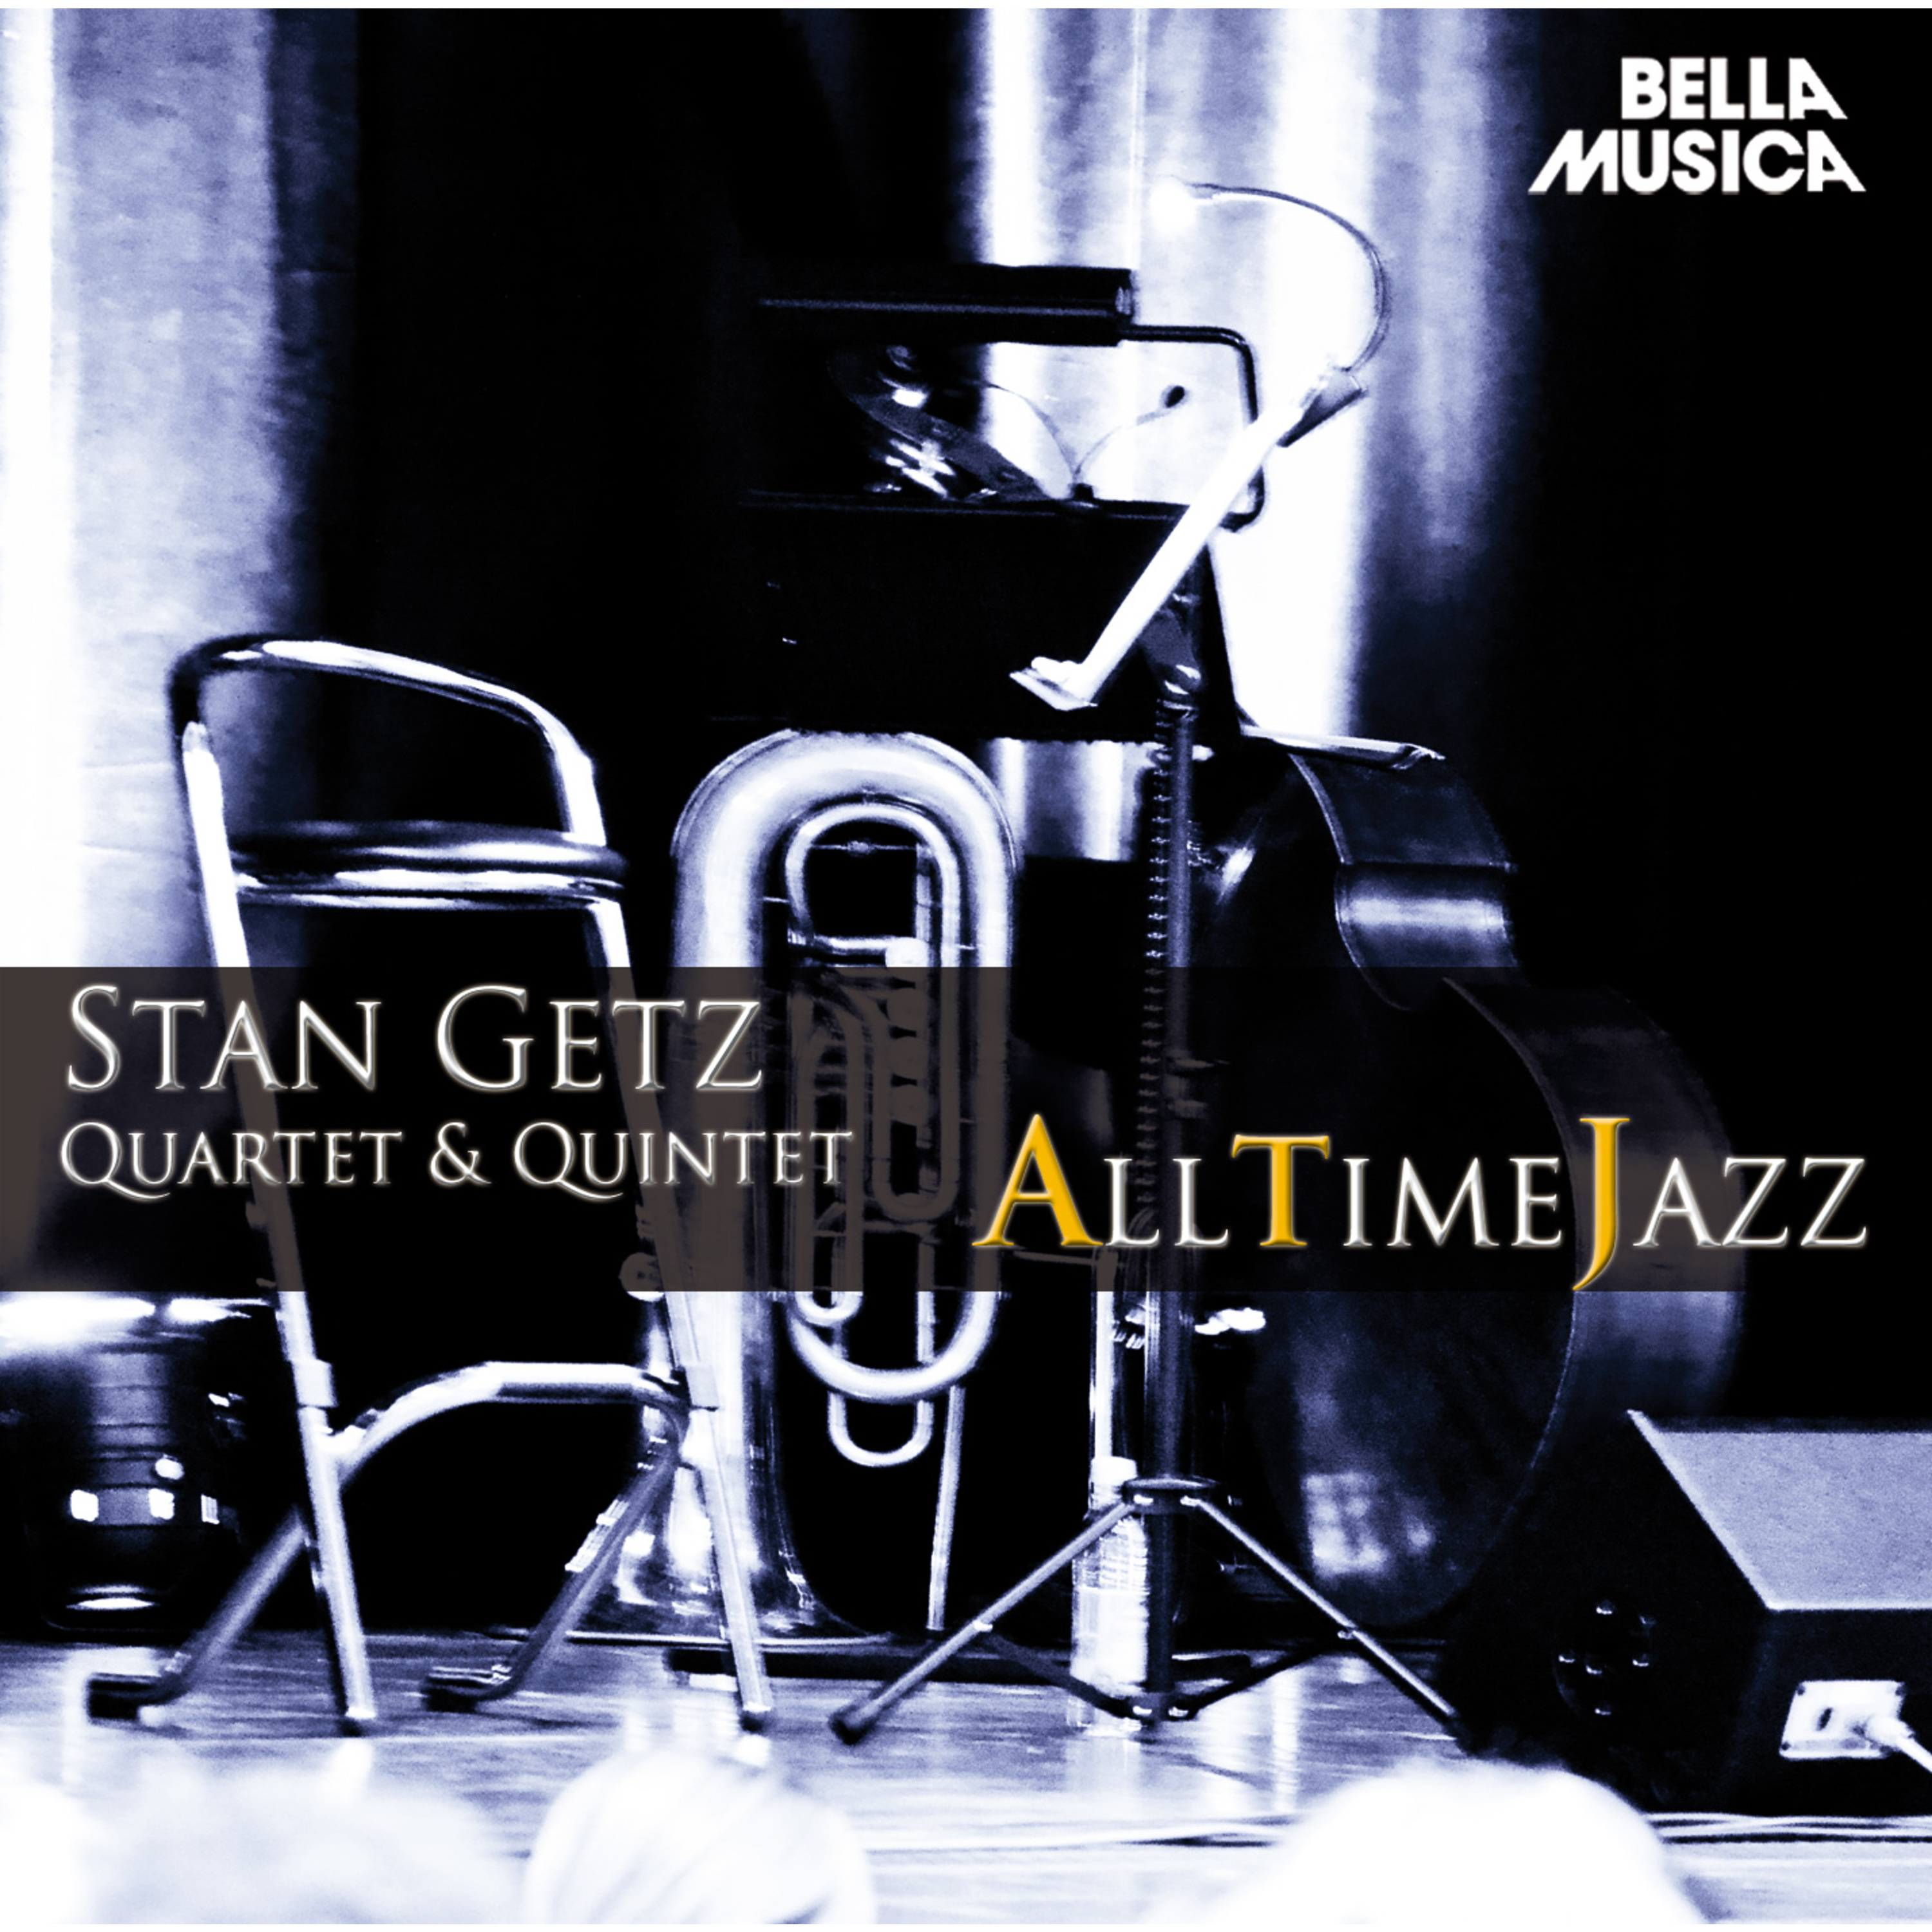 All Time Jazz: Stan Getz Quartet & Quintet